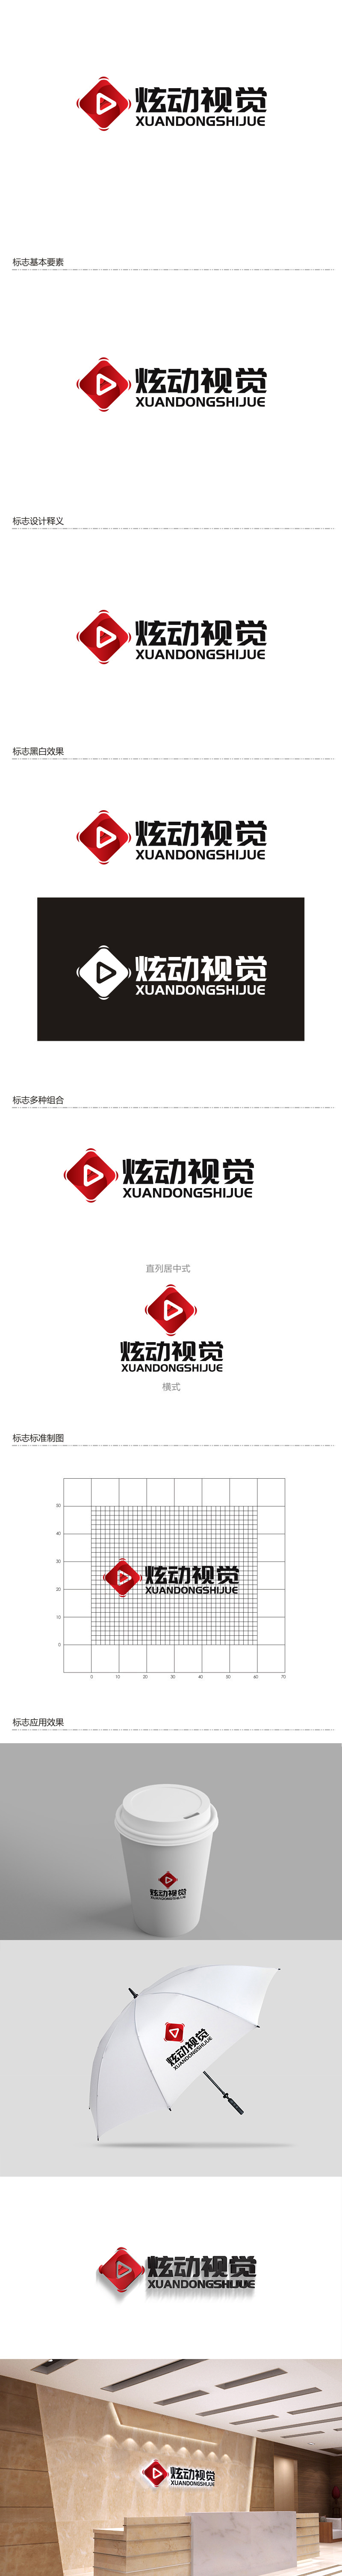 陈川的炫动视觉logo设计